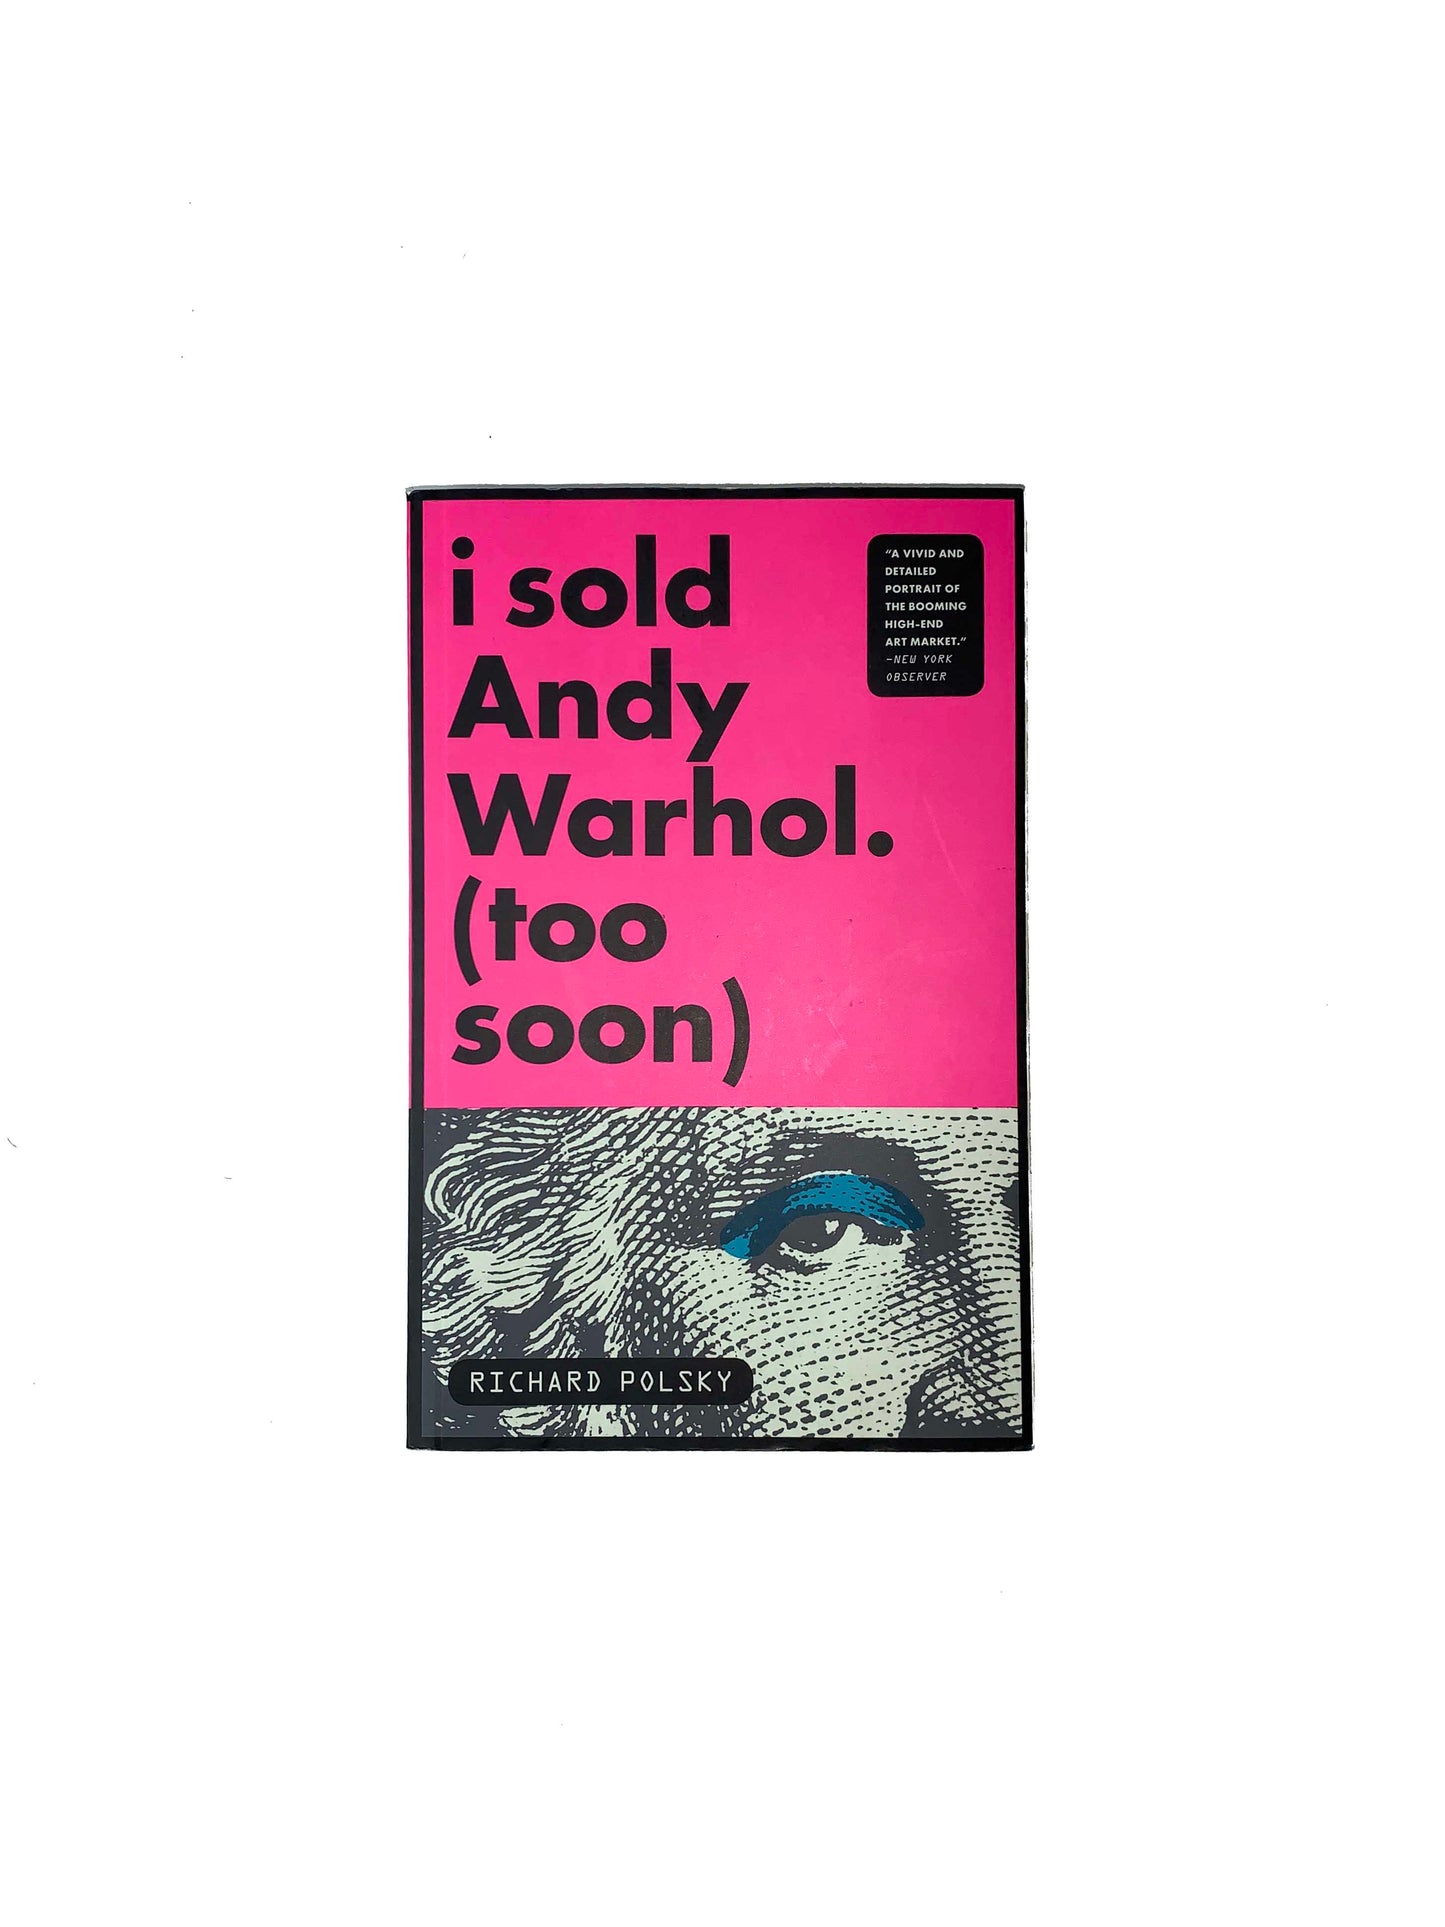 I sold Andy Warhol. (Too Soon)